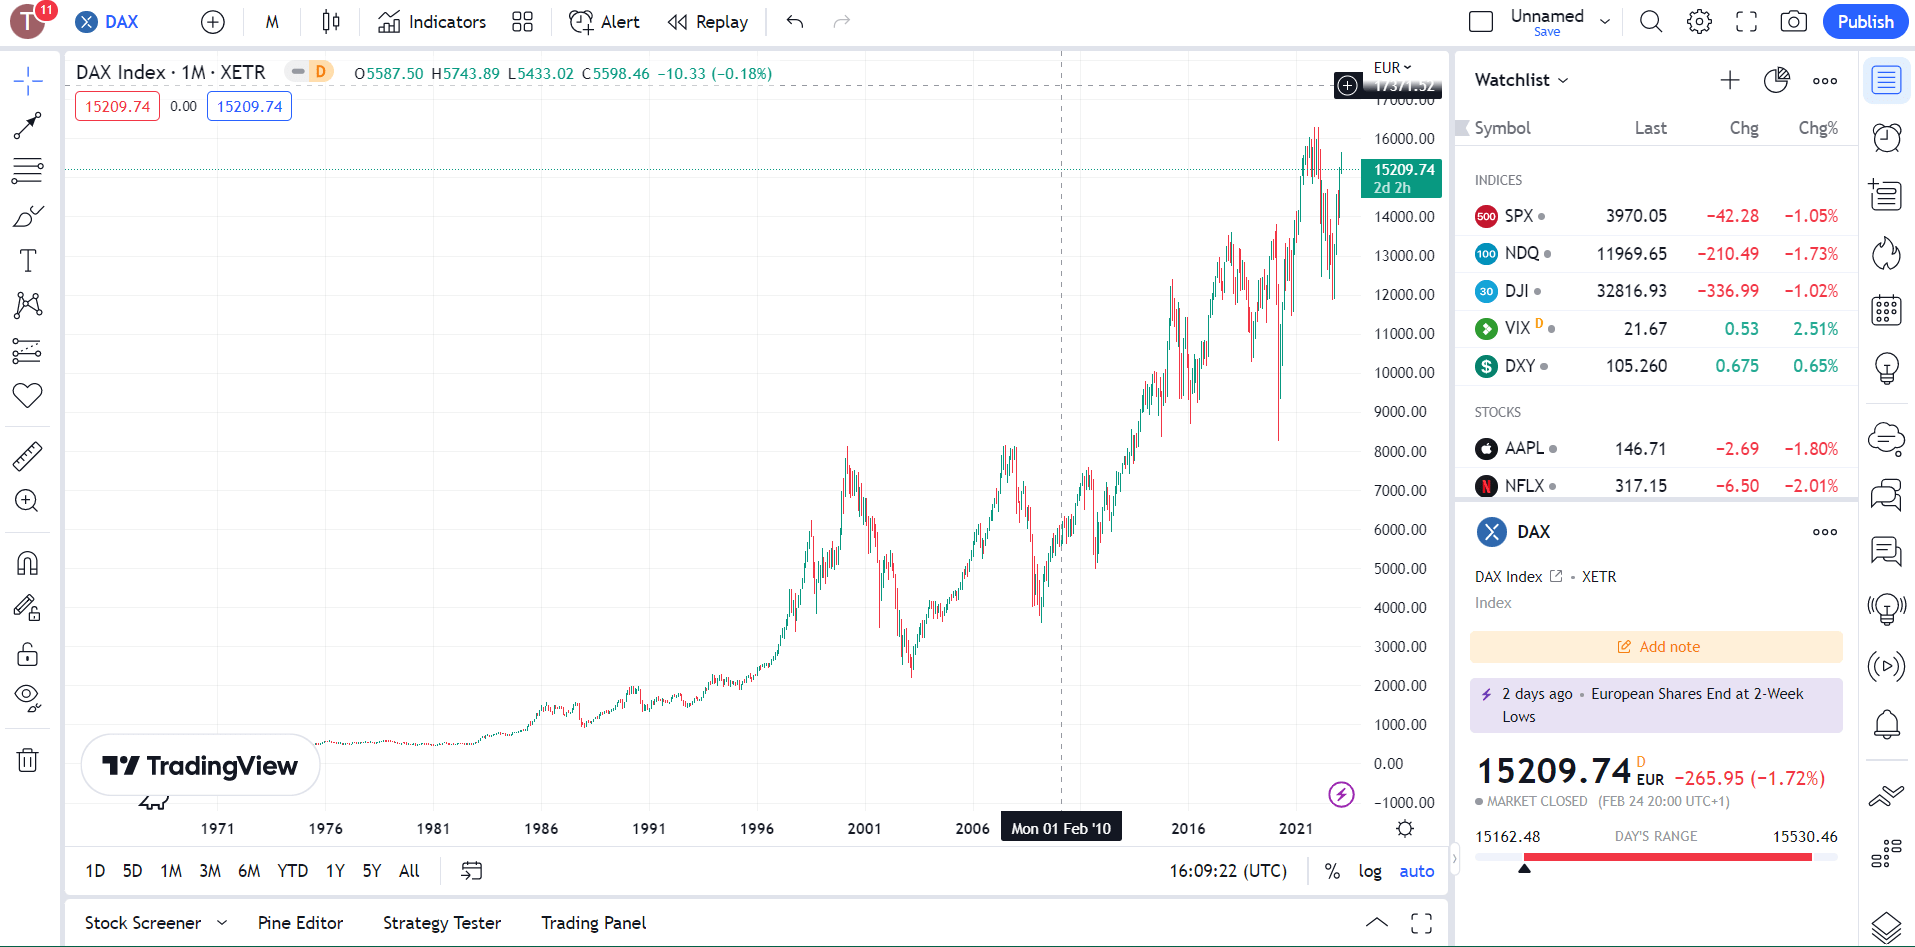 DAX 40 TradingView chart